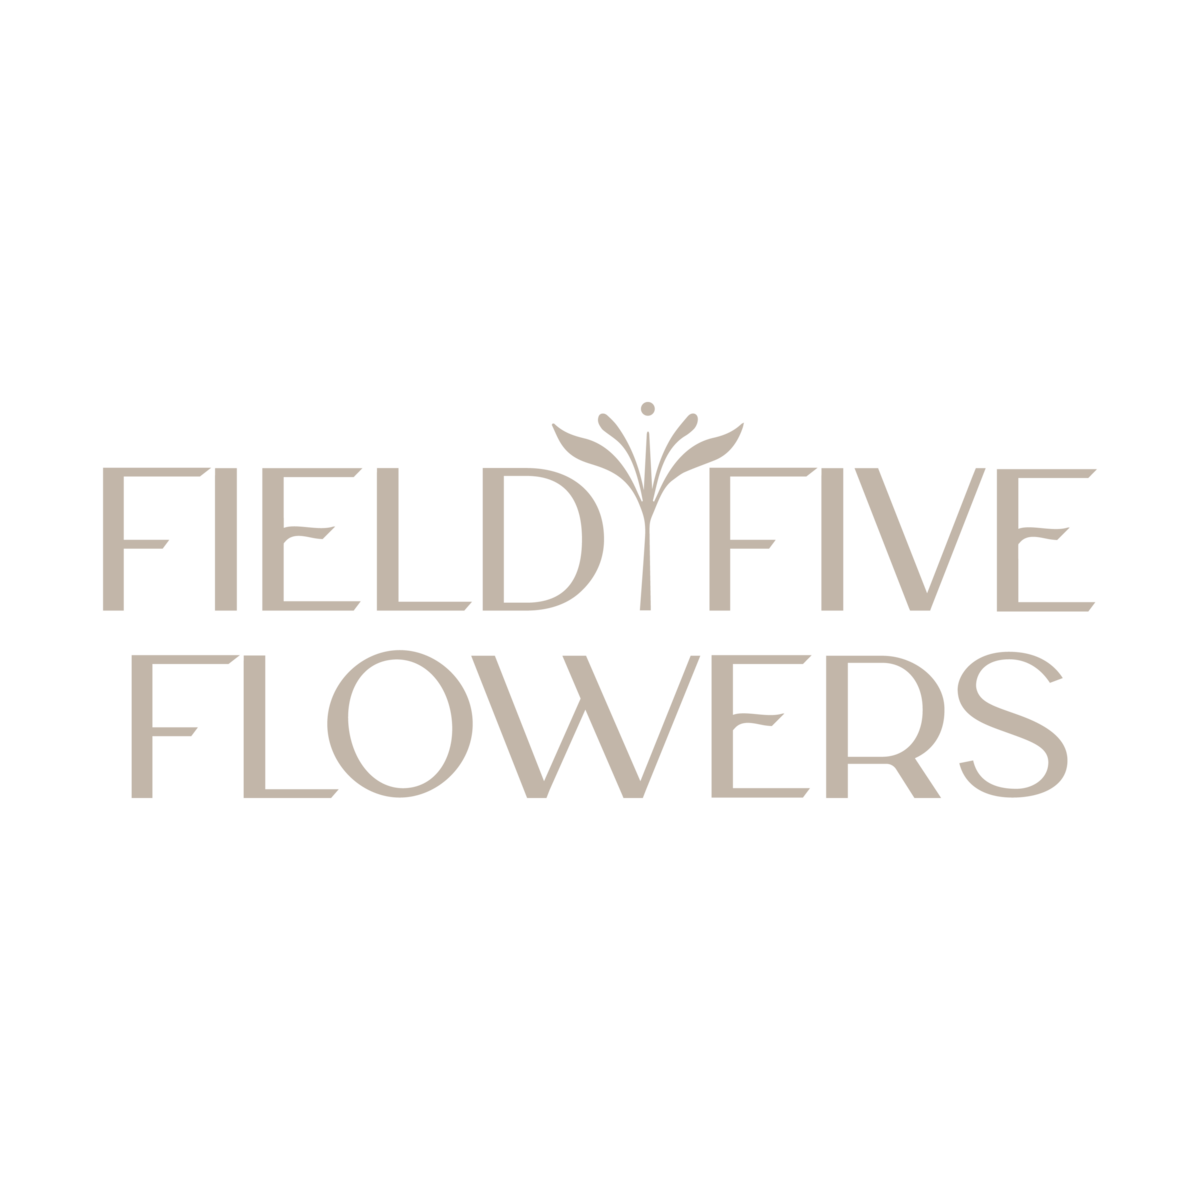 Field Five Flowers 2